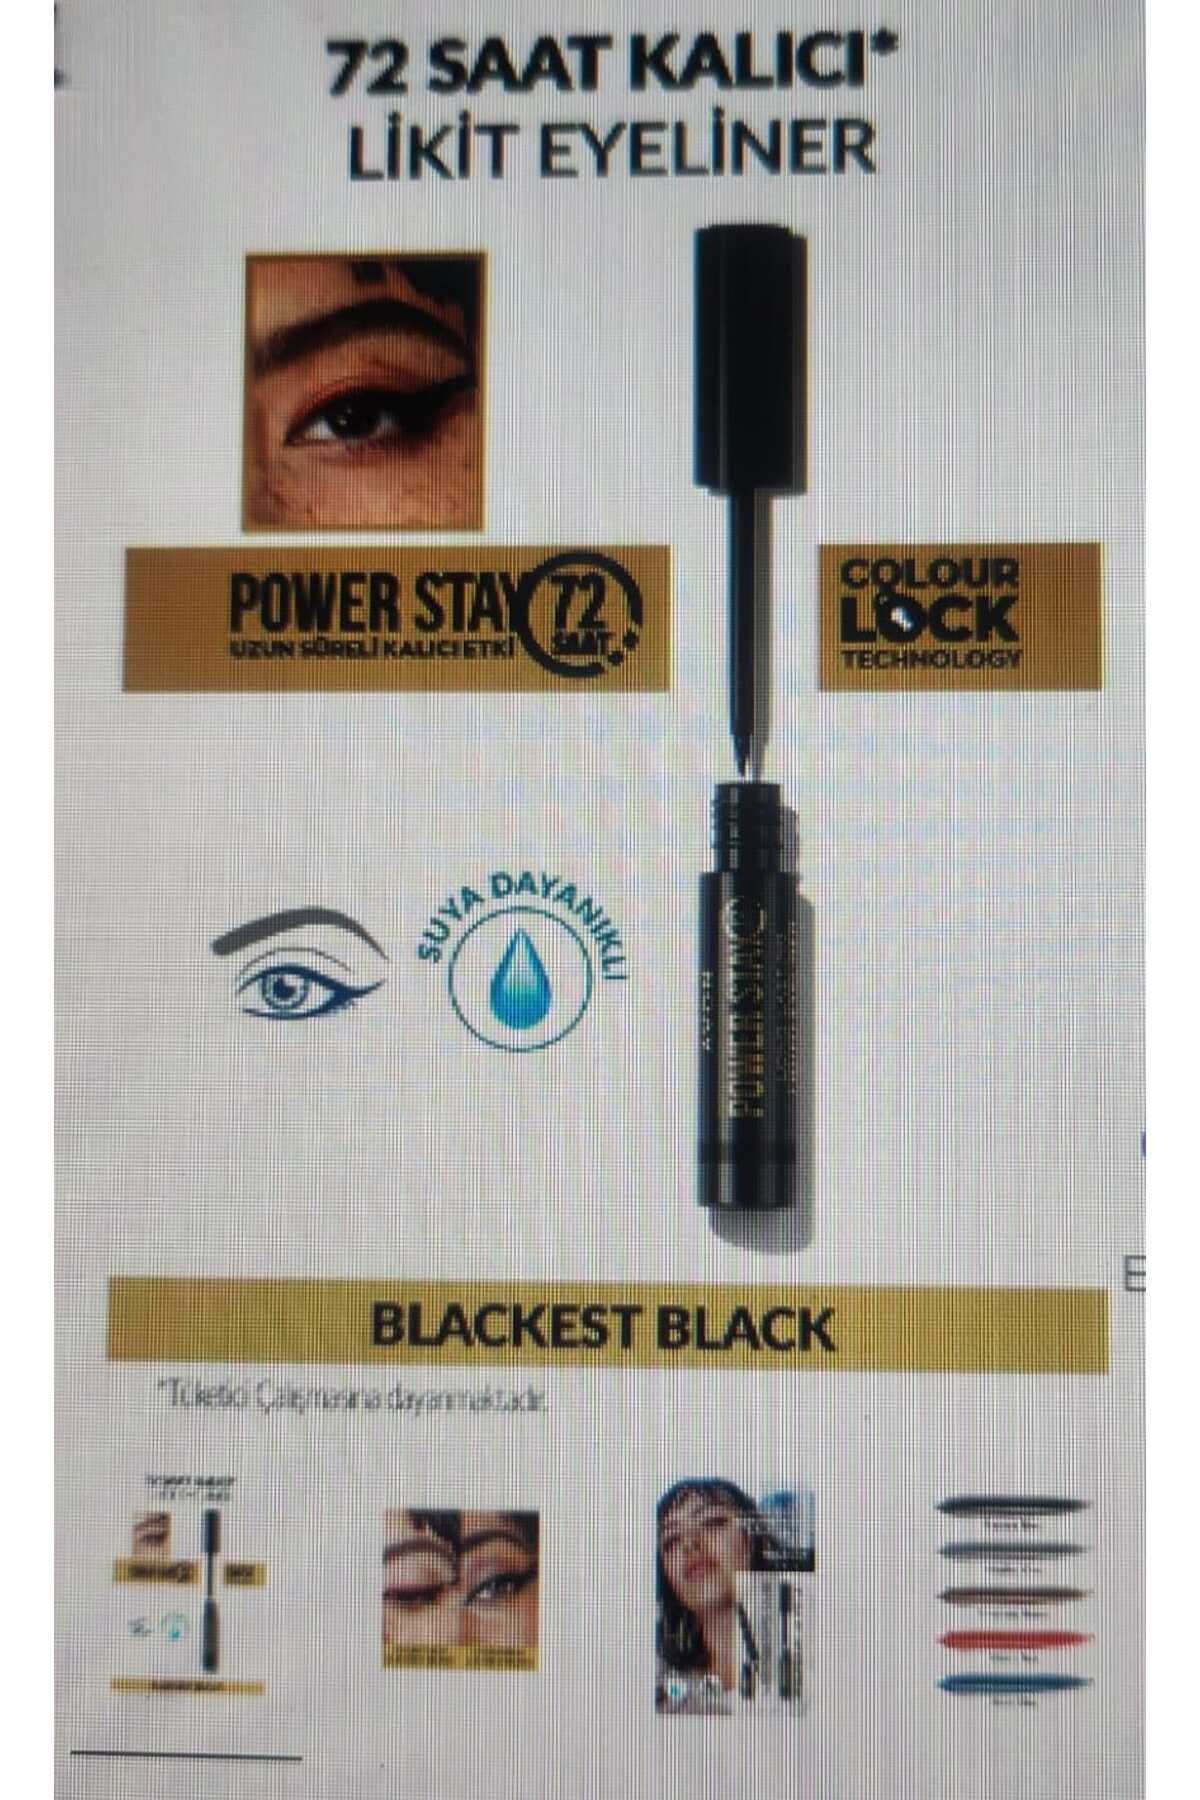 Avon Power Stay Uzun Süre Kalıcı Likit Eyeliner-black